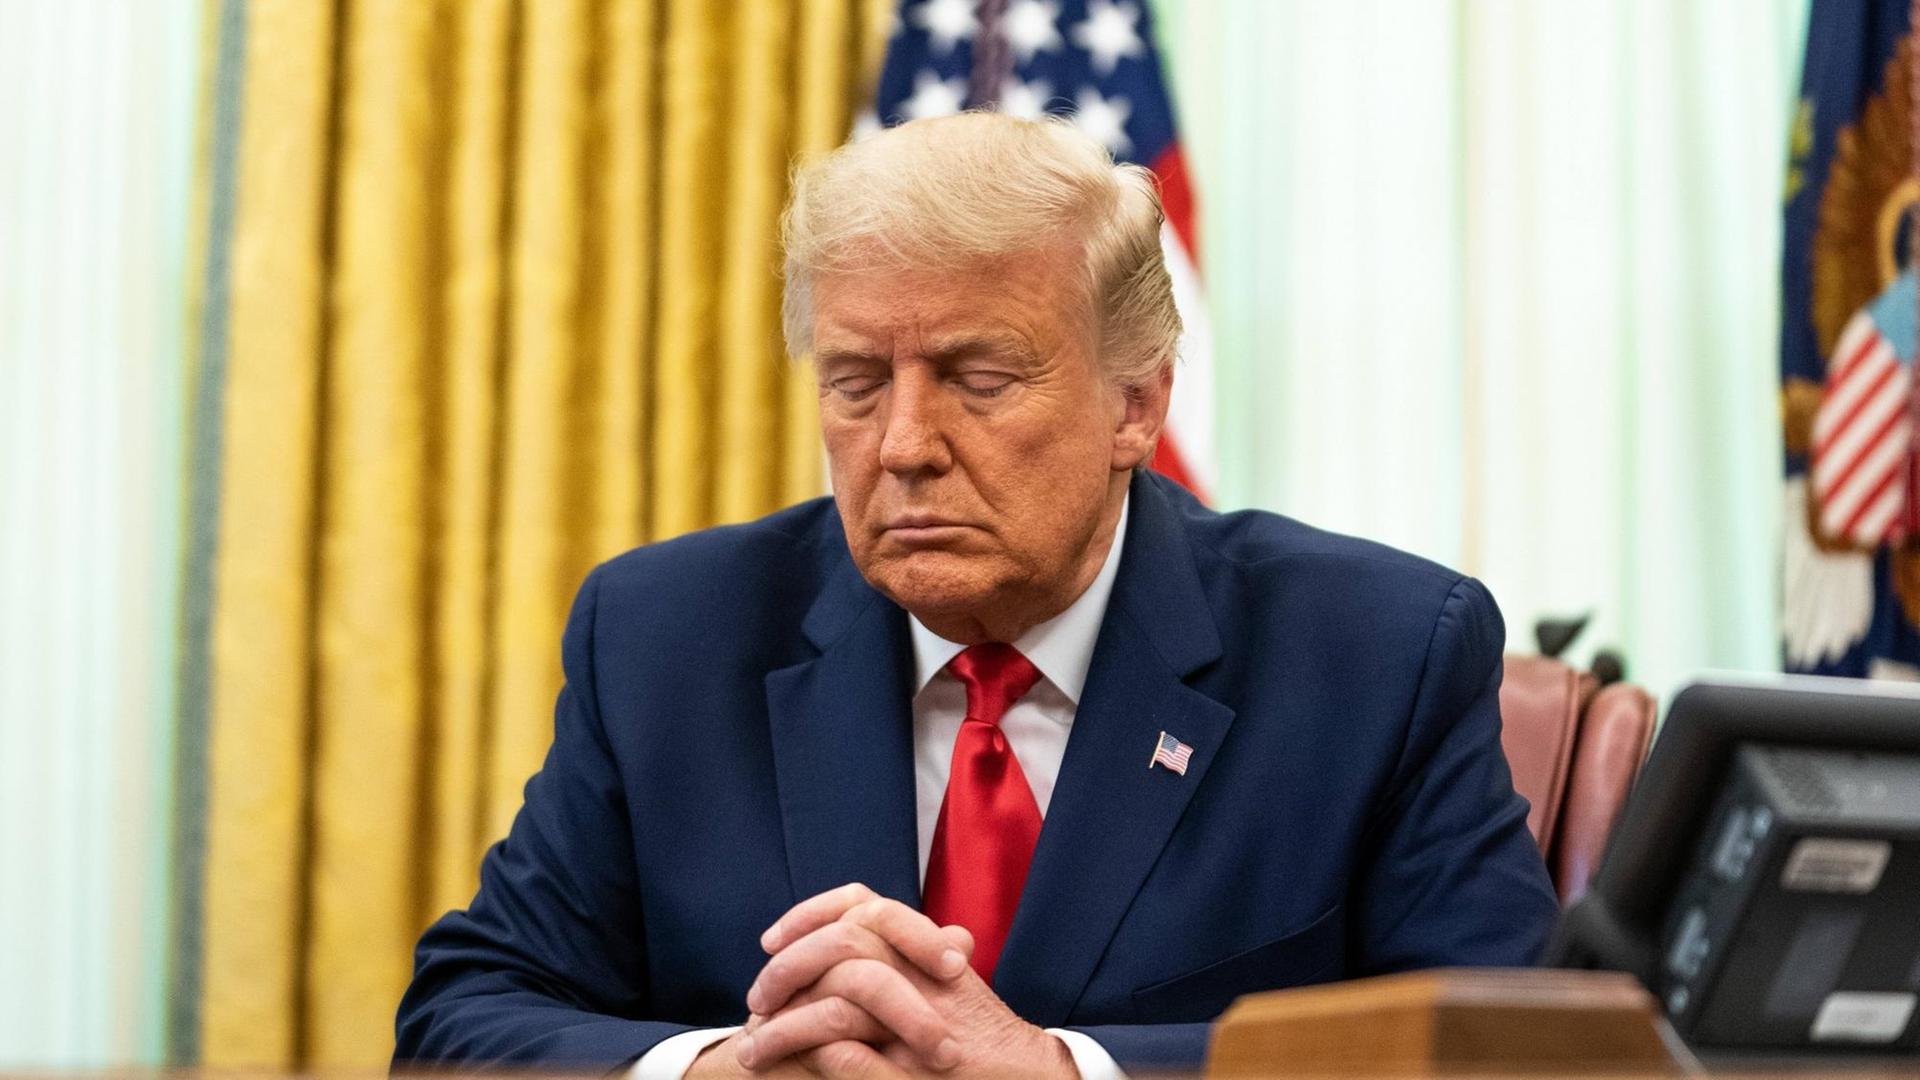 US-Präsident Donald Trump sitzt mit geschlossenen Augen und gefalteten Händen beim Beten im Oval Office an seinem Schreibtisch, nachdem er eine Strafgefangene von ihrer lebenslangen Haftstrafe begnadigt hat.